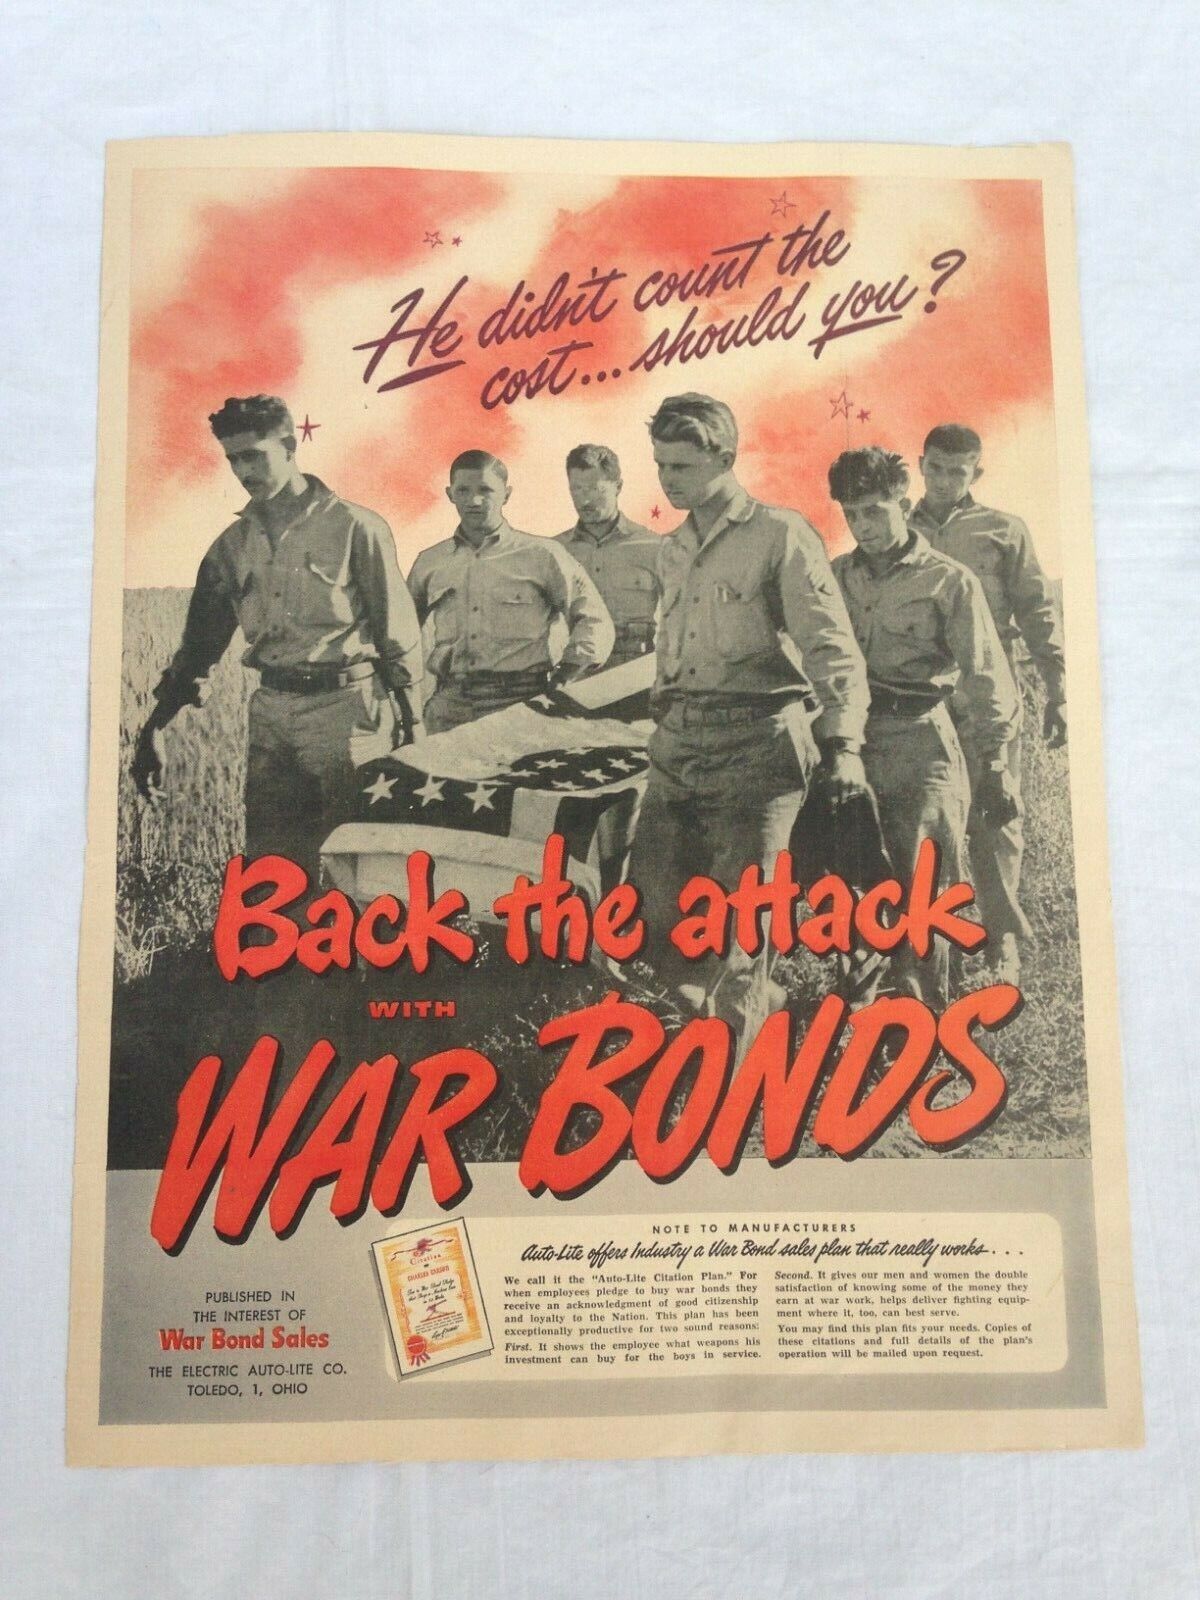 VTG BACK THE ATTACK WAR BONDS ADVERTISEMENT MAGAZINE AD WWII WW2 WORLD WAR 2